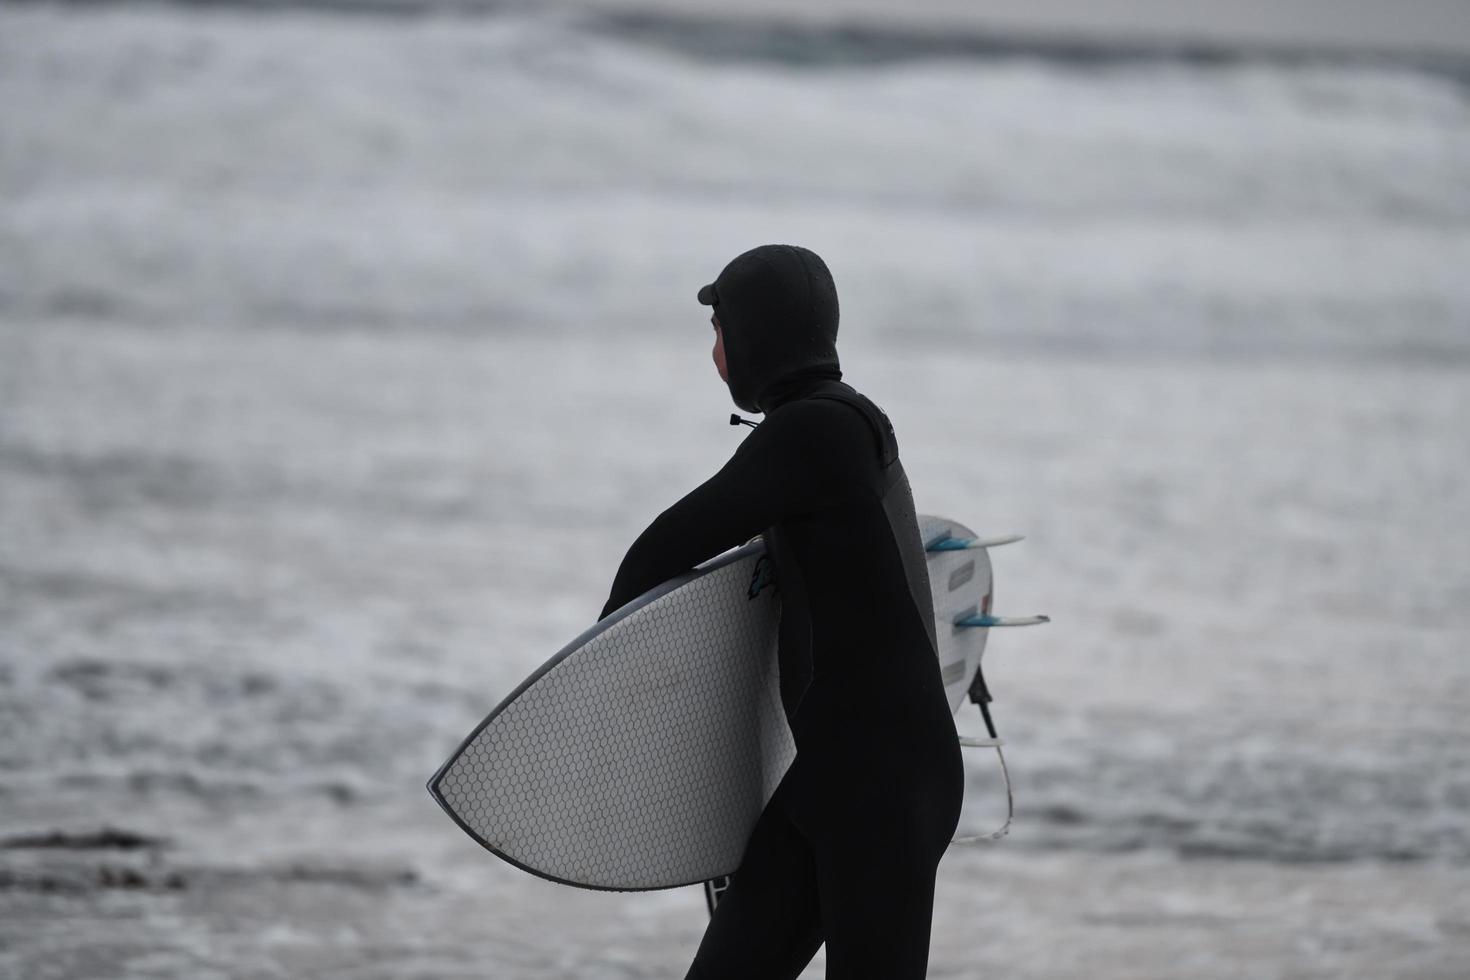 surfista ártico yendo por la playa después de surfear foto